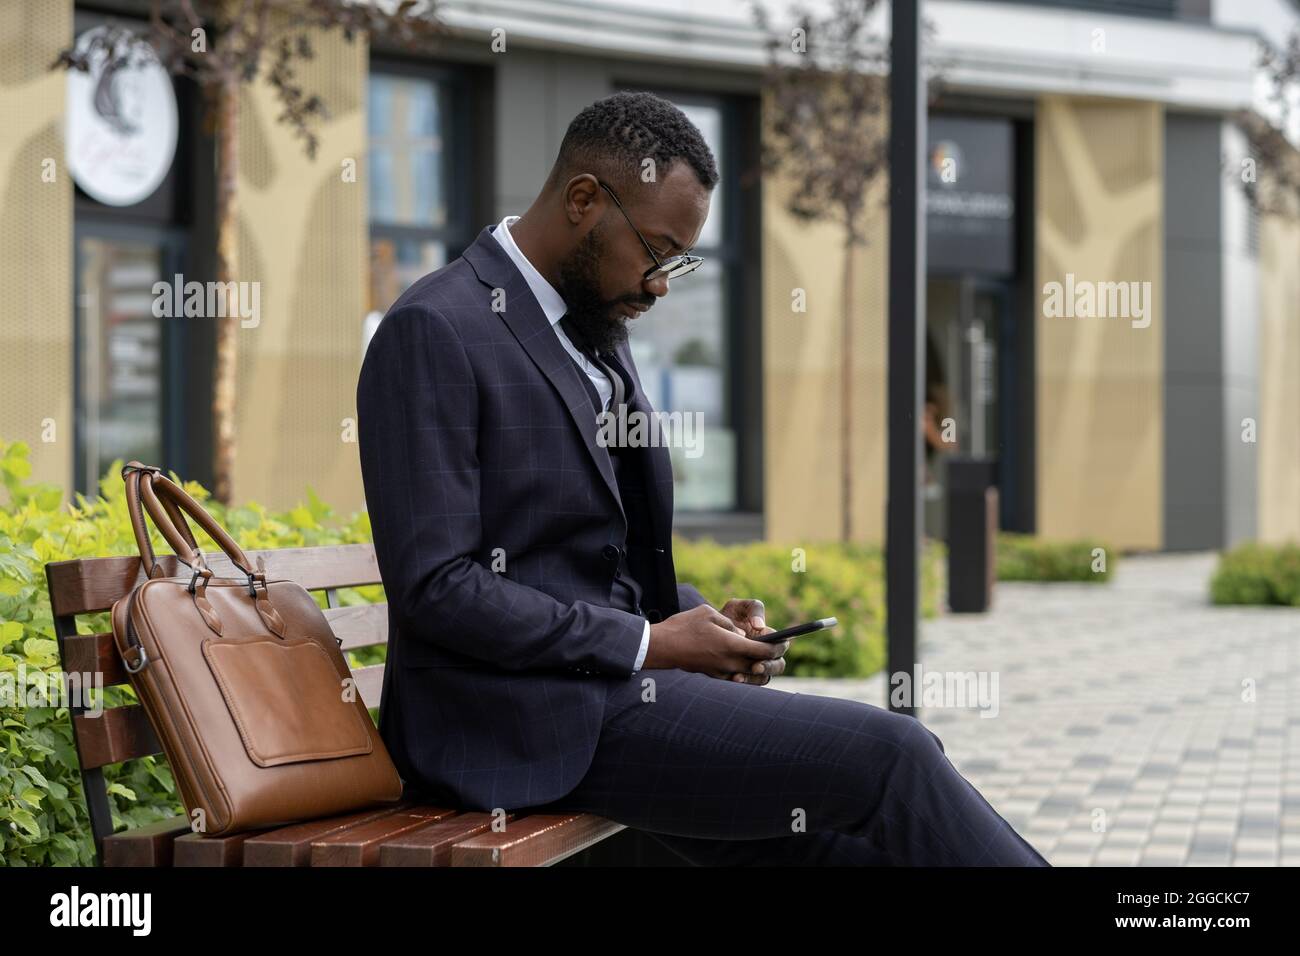 Giovane uomo d'affari di etnia africana che texting in smartphone mentre si riposa sul banco in ambiente urbano Foto Stock